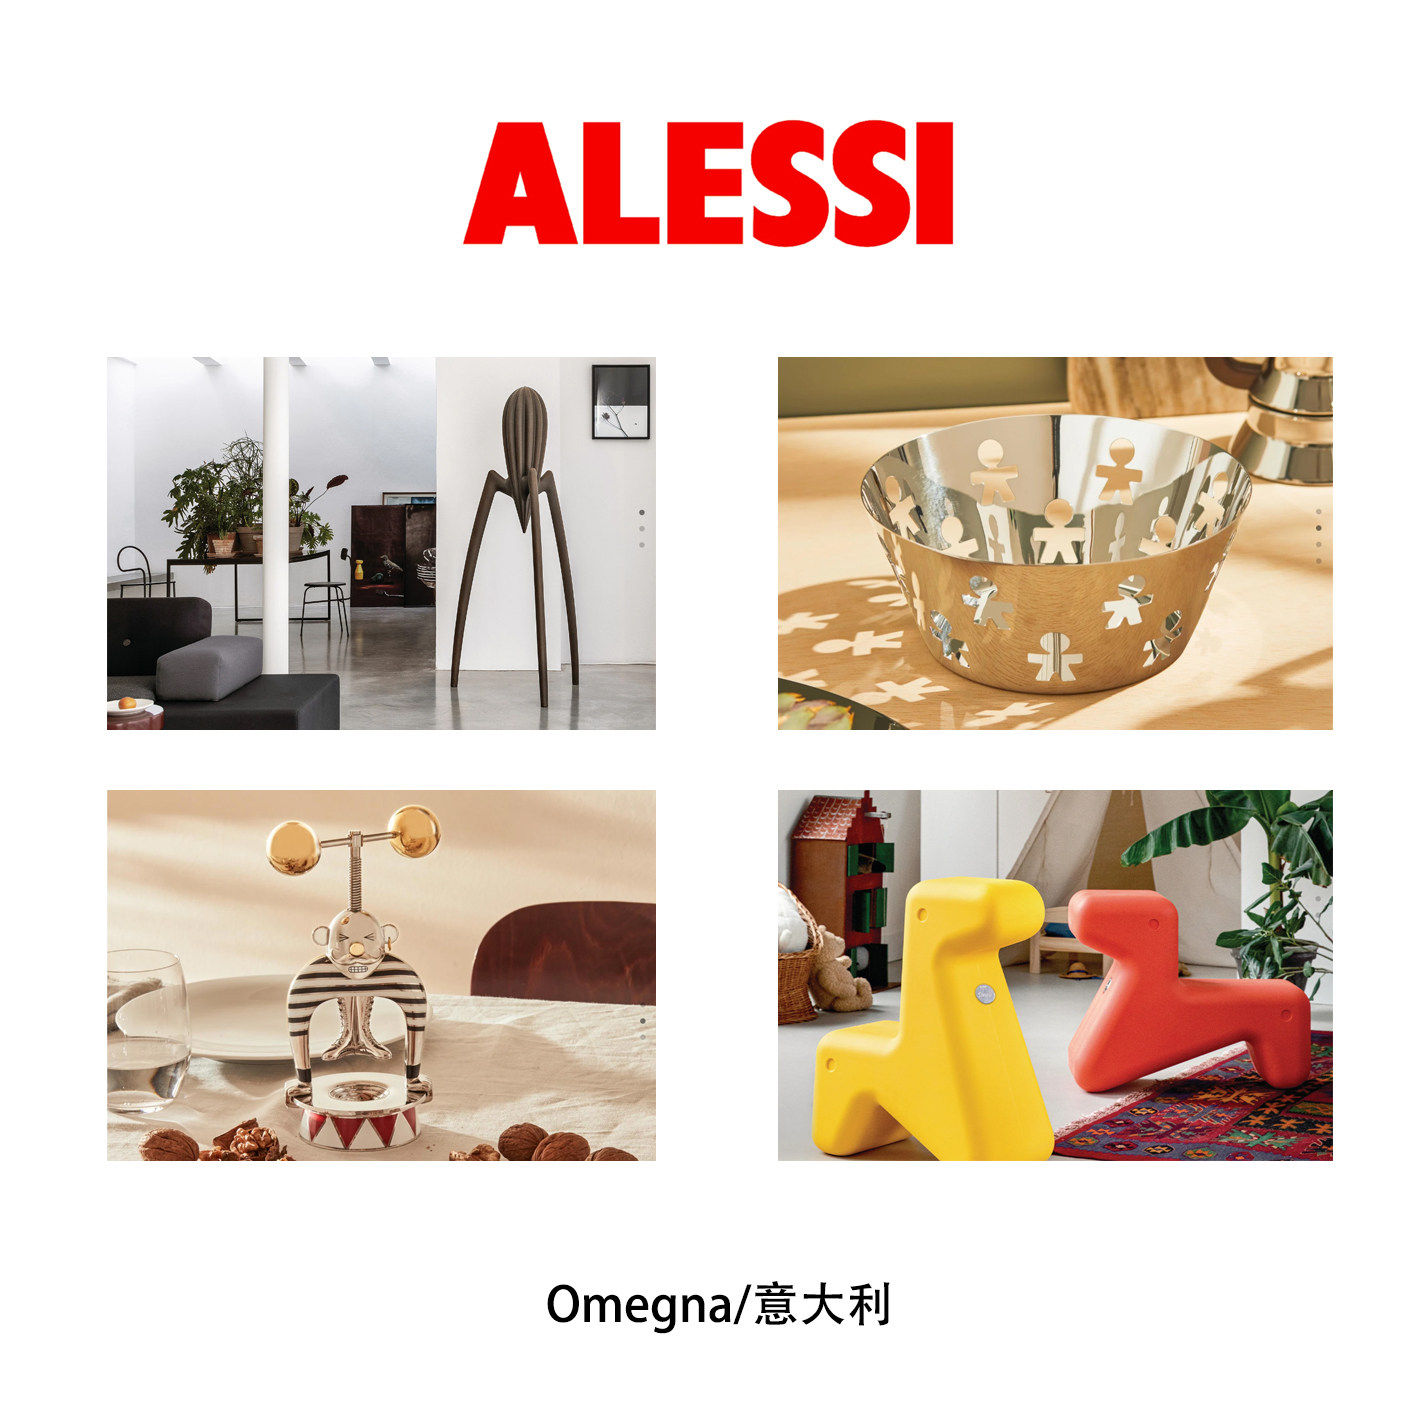 Alessi 阿莱西/家具产品